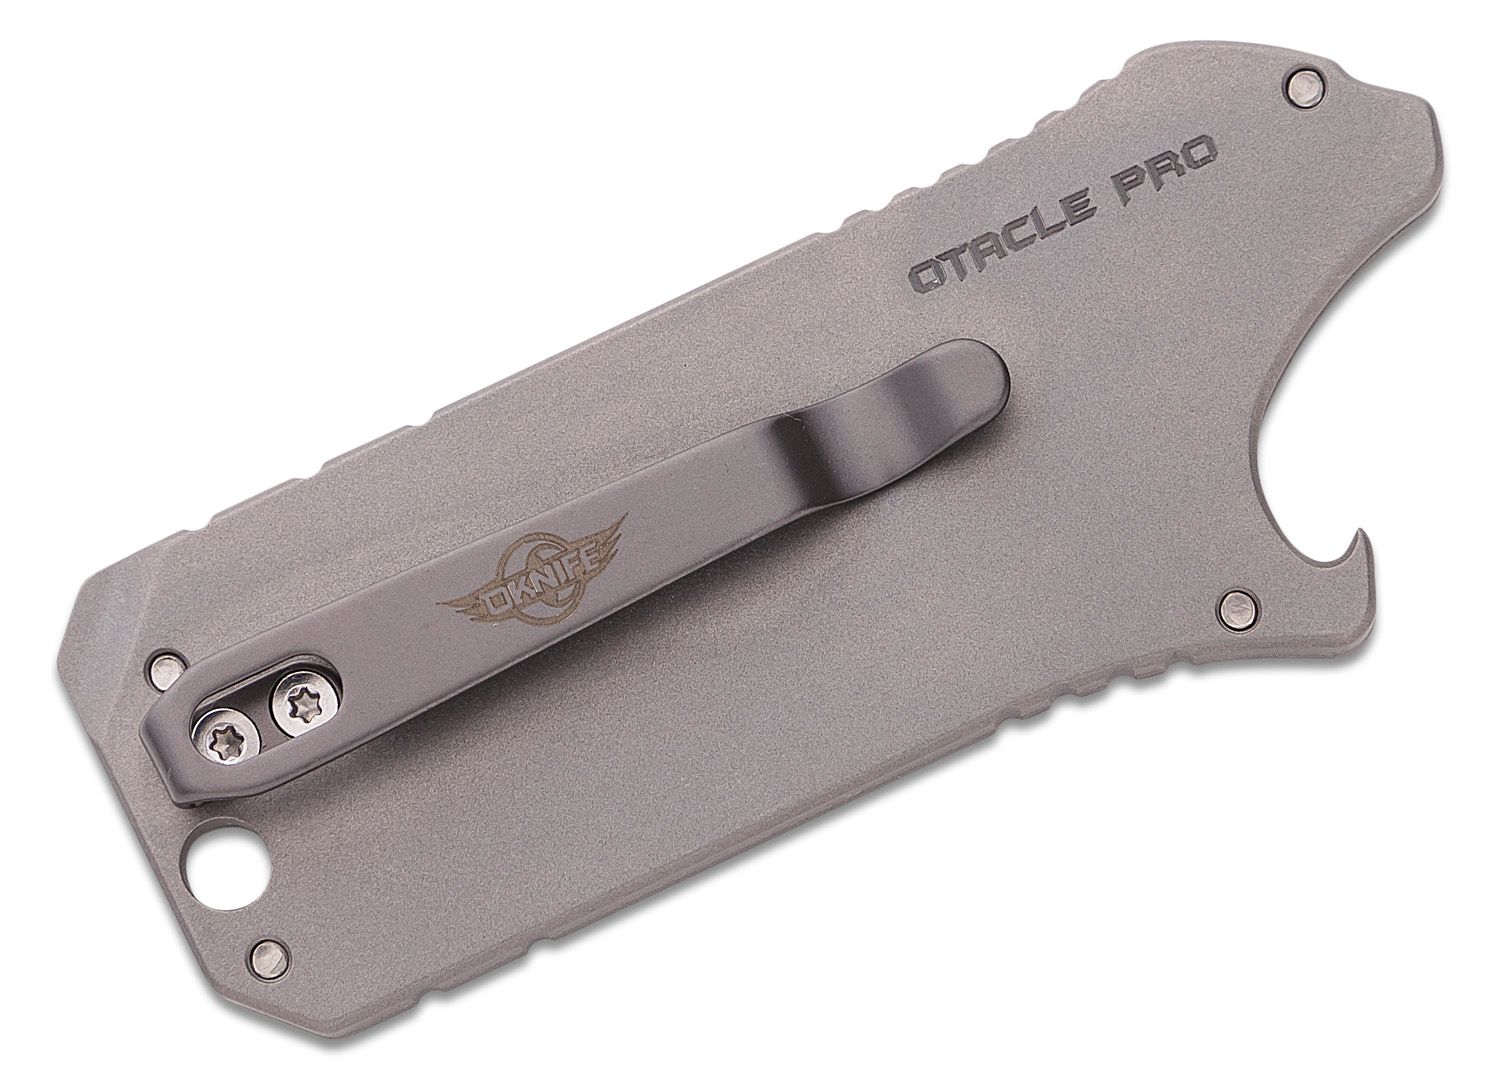 Oknife Otacle Pro Titanium Pocket Utility Tool,Box Opener Razor Knife